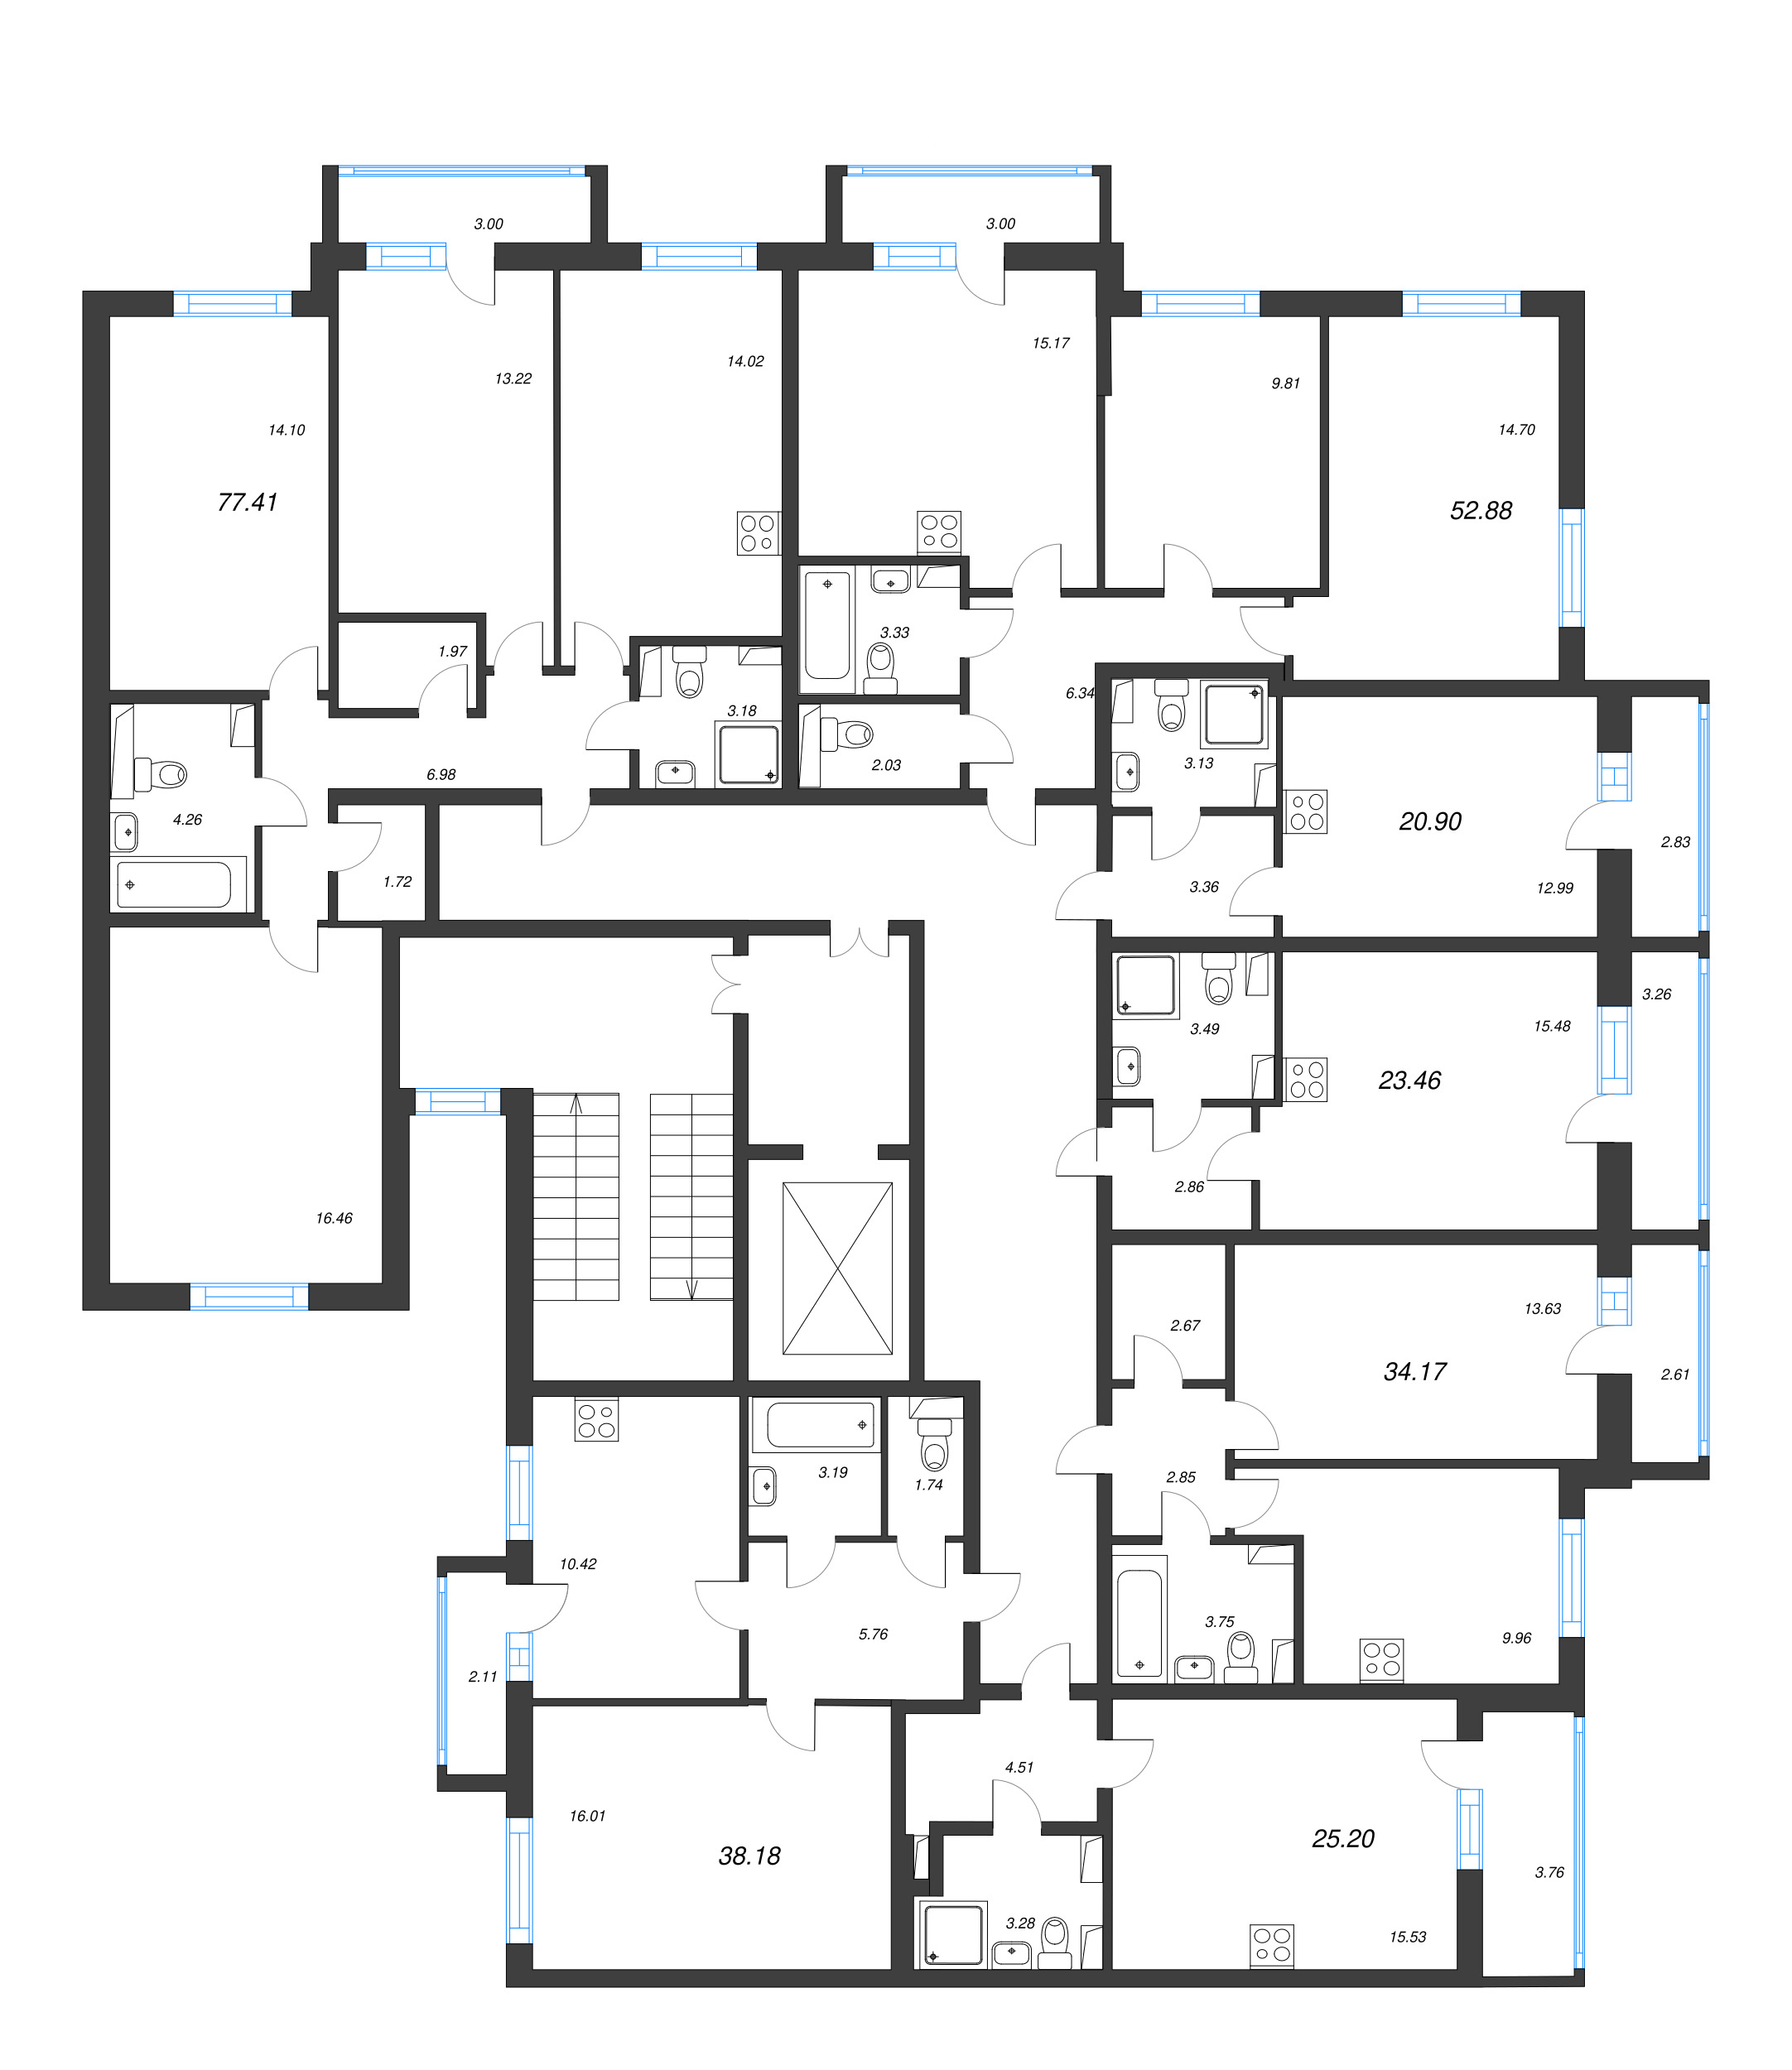 Квартира-студия, 20.9 м² в ЖК "Кинопарк" - планировка этажа